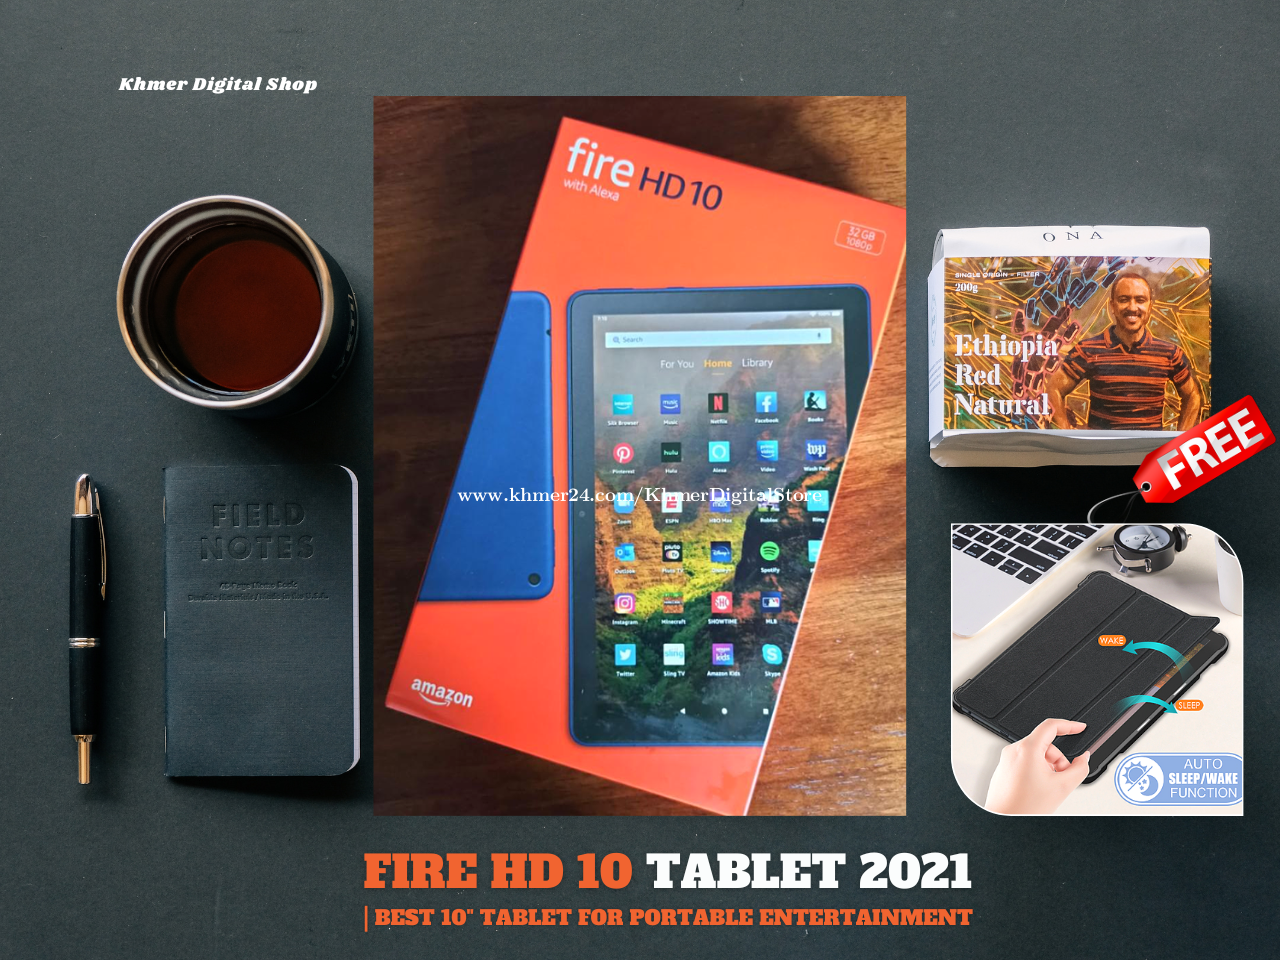 Fire HD 10 tablet, 10.1, 1080p Full HD, 32 GB, latest model